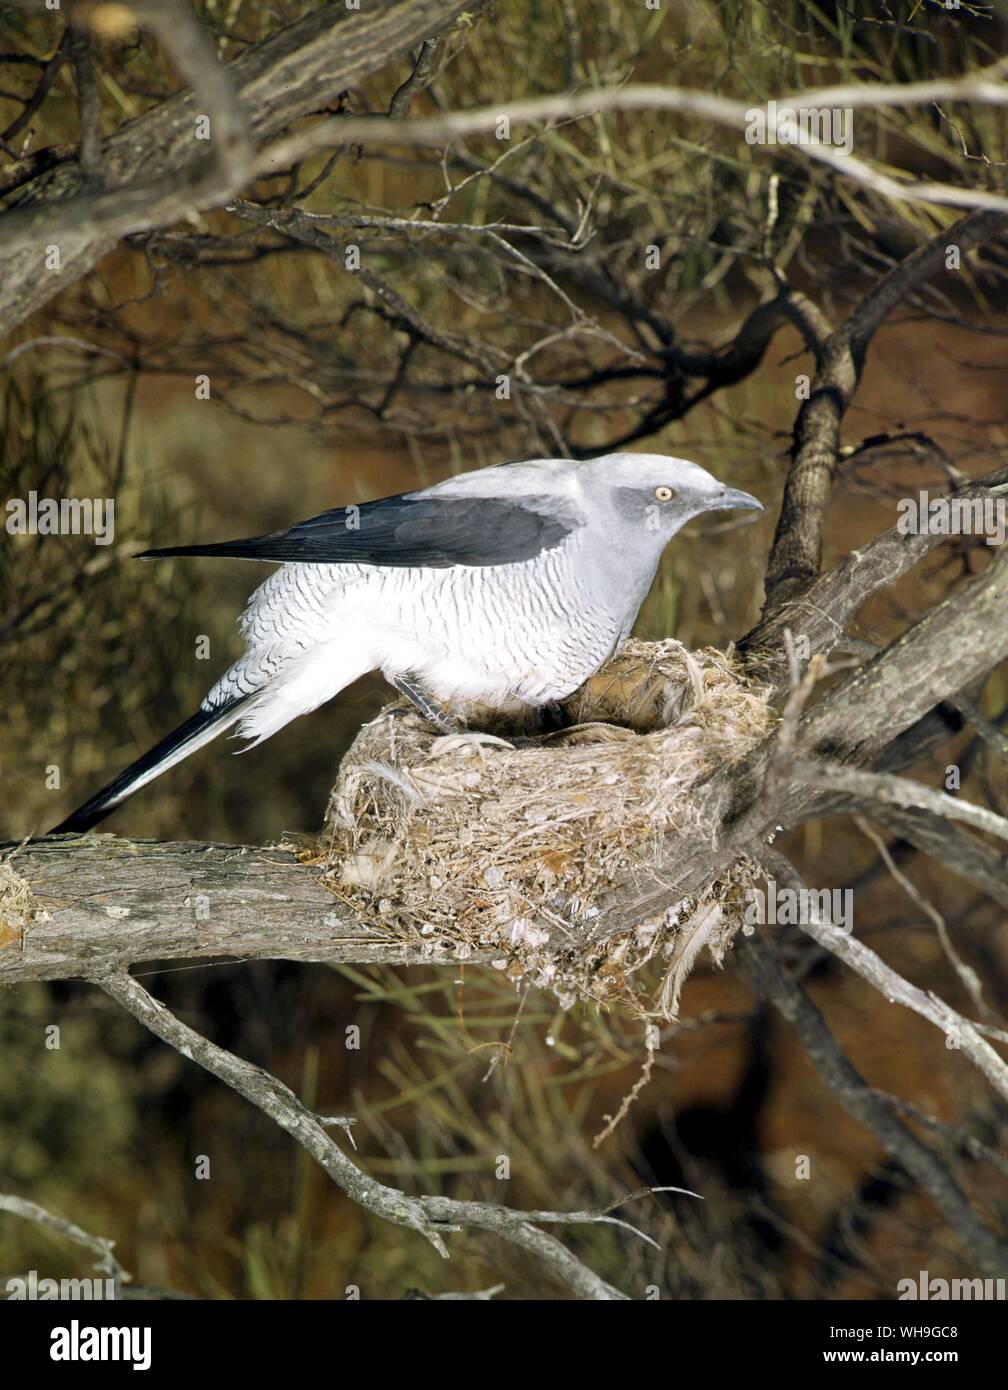 Bird sitting on nest Stock Photo